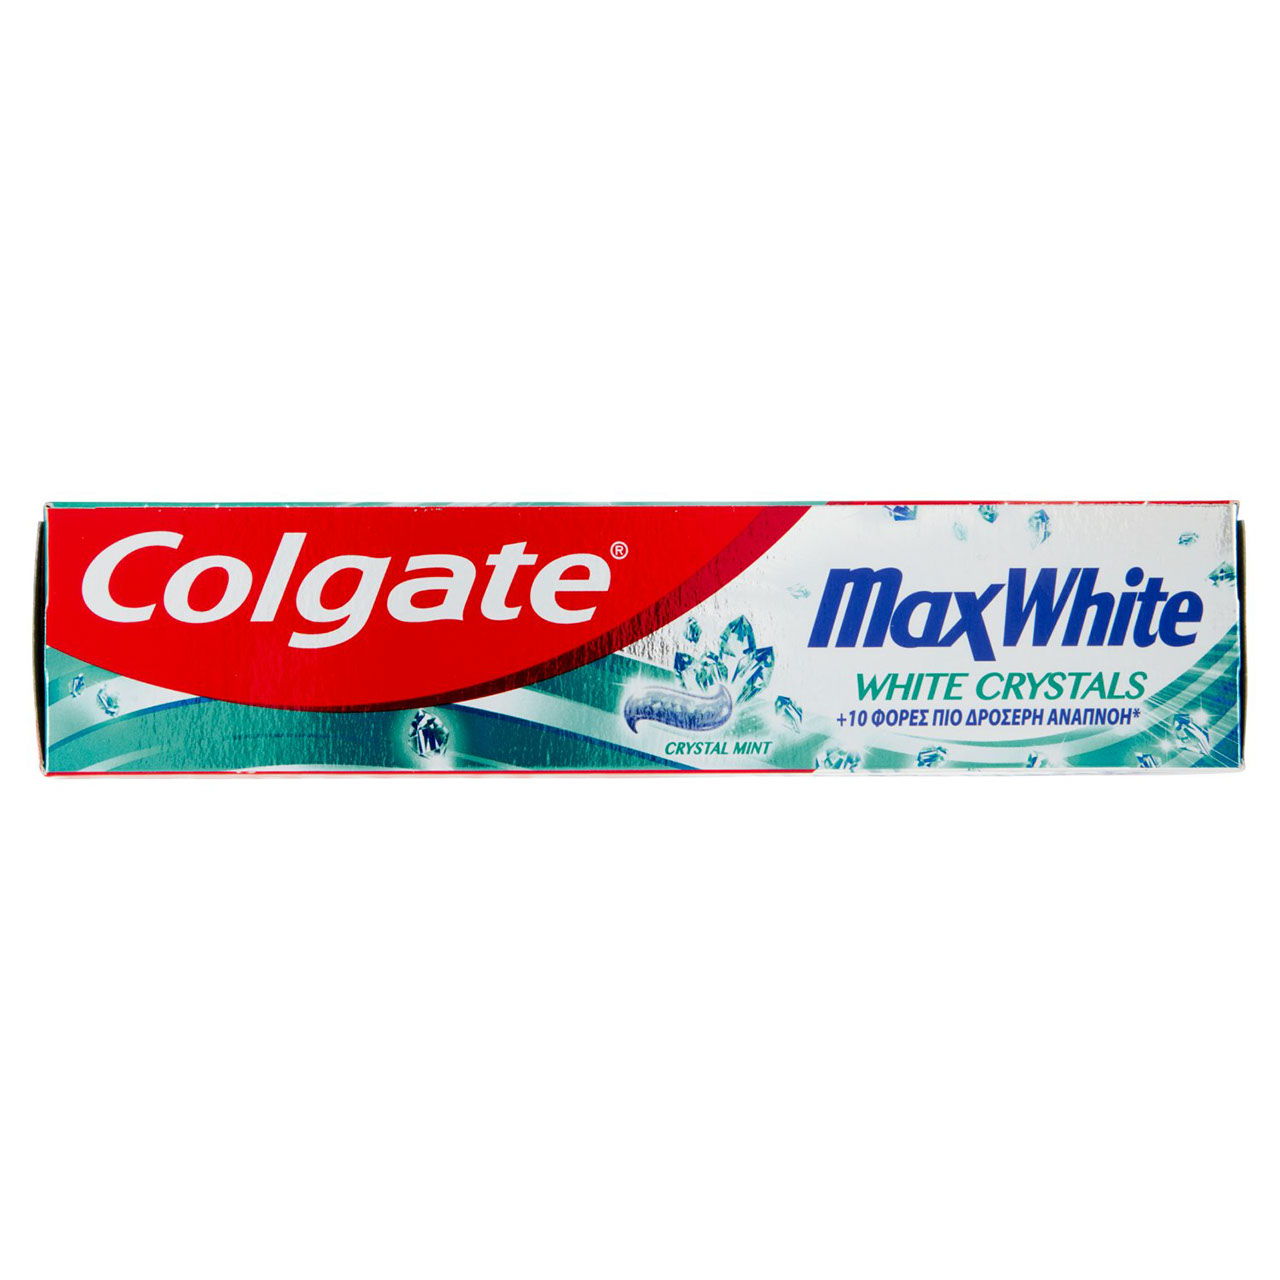 Colgate dentifricio sbiancante Max White Cristalli Bianchi 75 ml